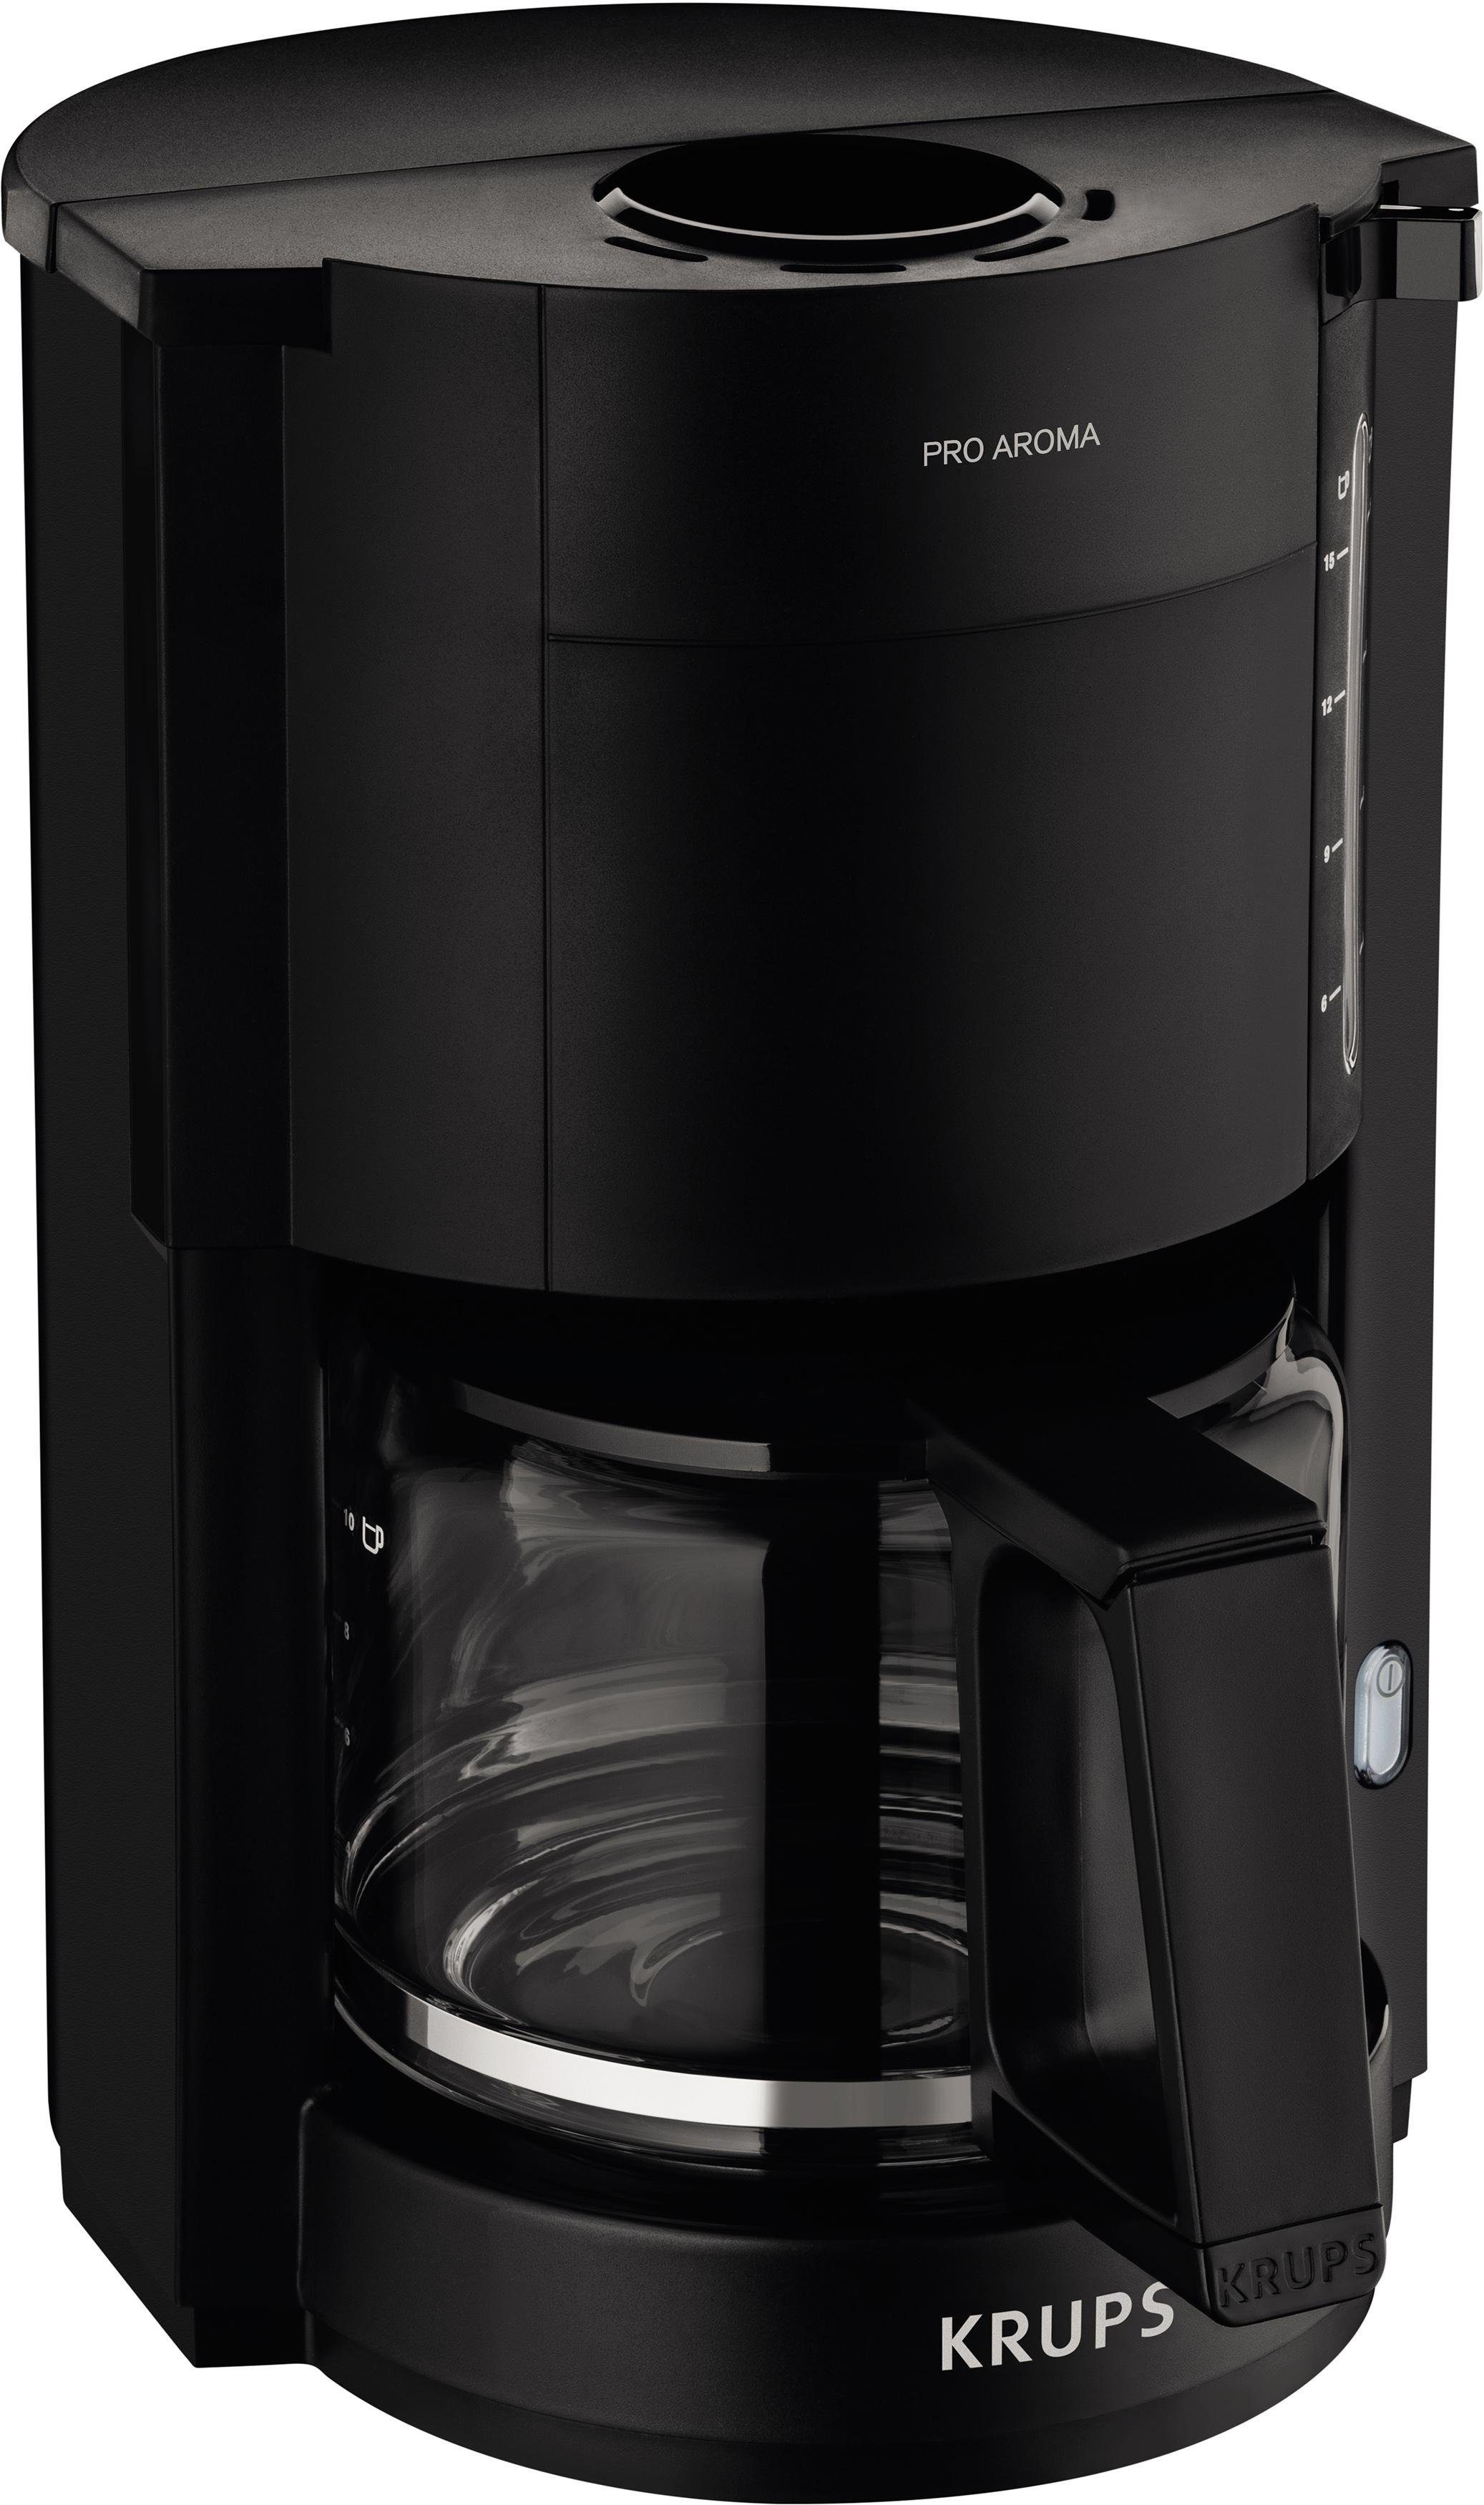 Krups Filterkaffeemaschine F30908 Pro Aroma, mit Glaskanne, 1,25L  Füllmenge, 10-15 Tassen, 1050W, Schwarz online kaufen | OTTO